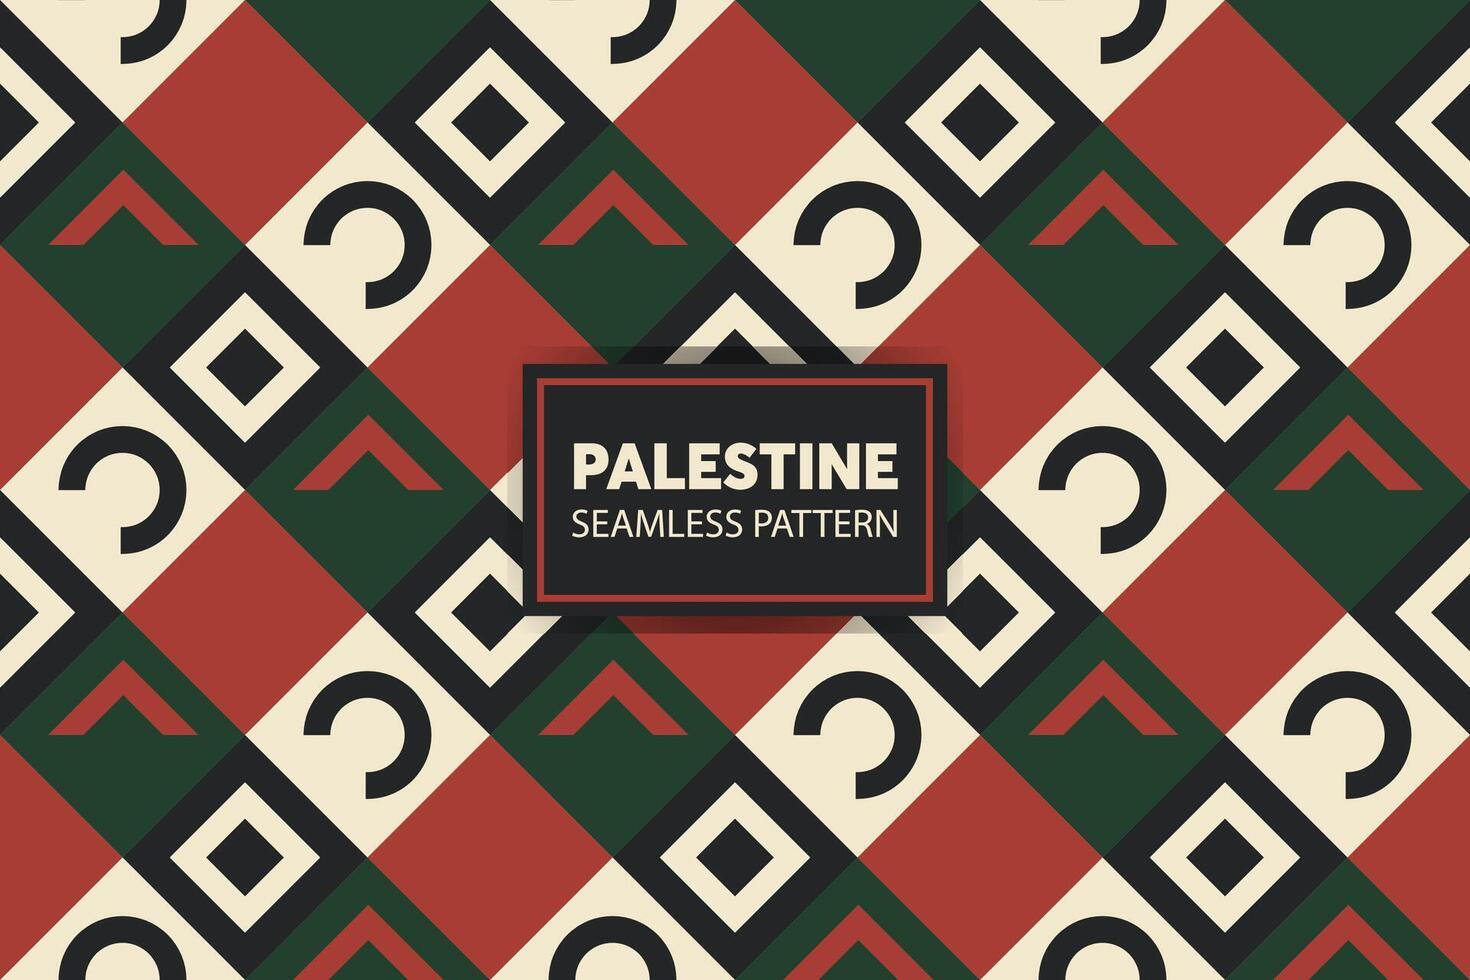 moderno palestino bordado padronizar fundo. ótimo para apresentações e slides. vetor arquivo.